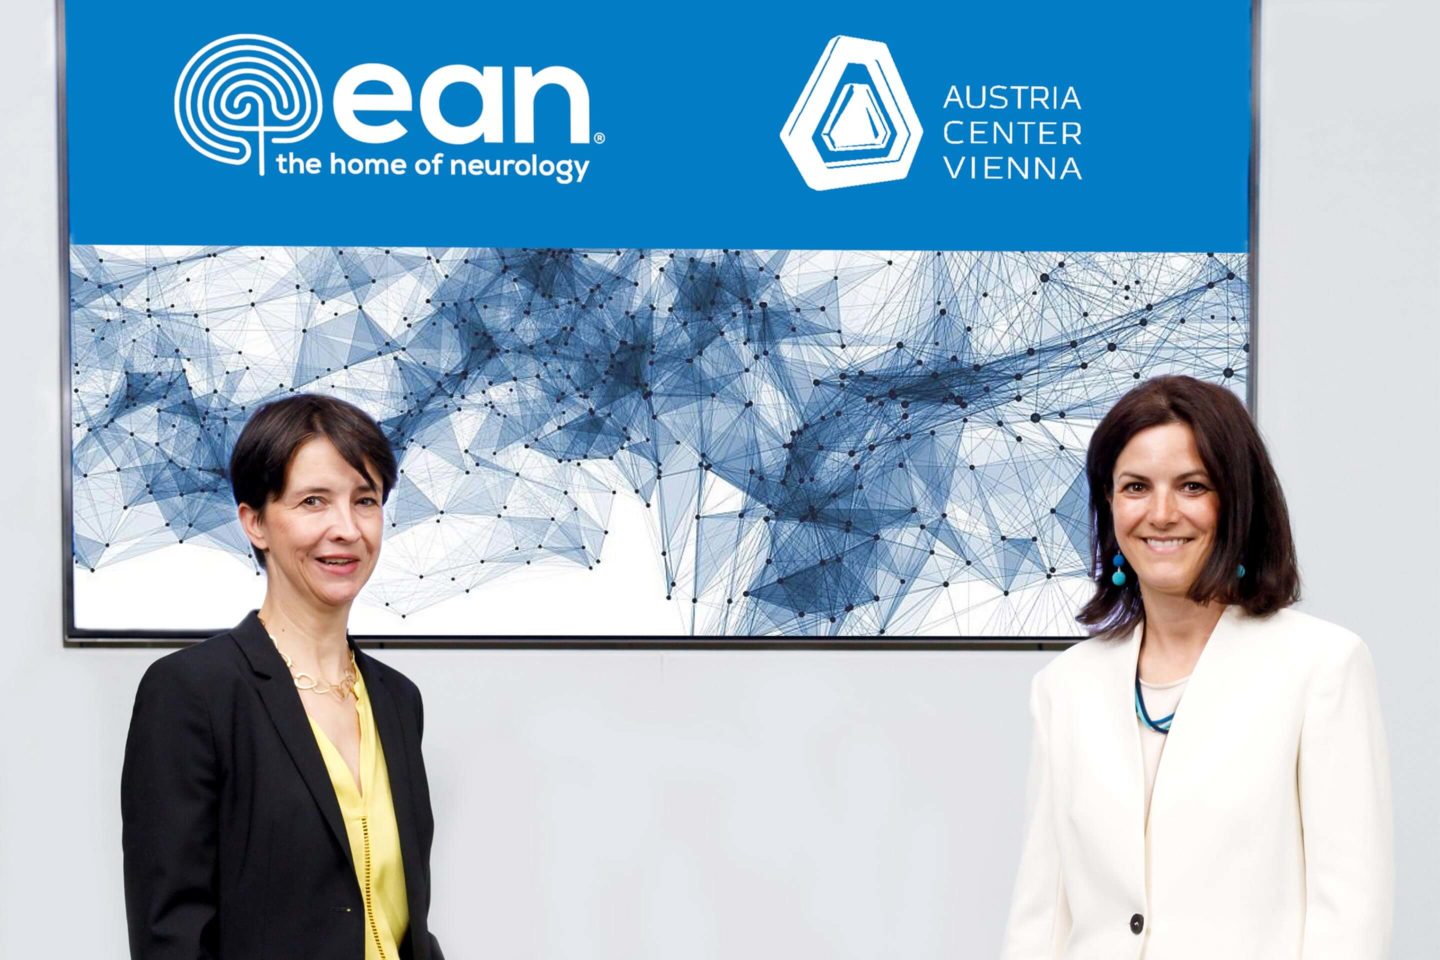 Foto: Online Kongress EAN mit den Personen Anja Sander und Susanne Baumann-Söllner im Austria Center Vienna